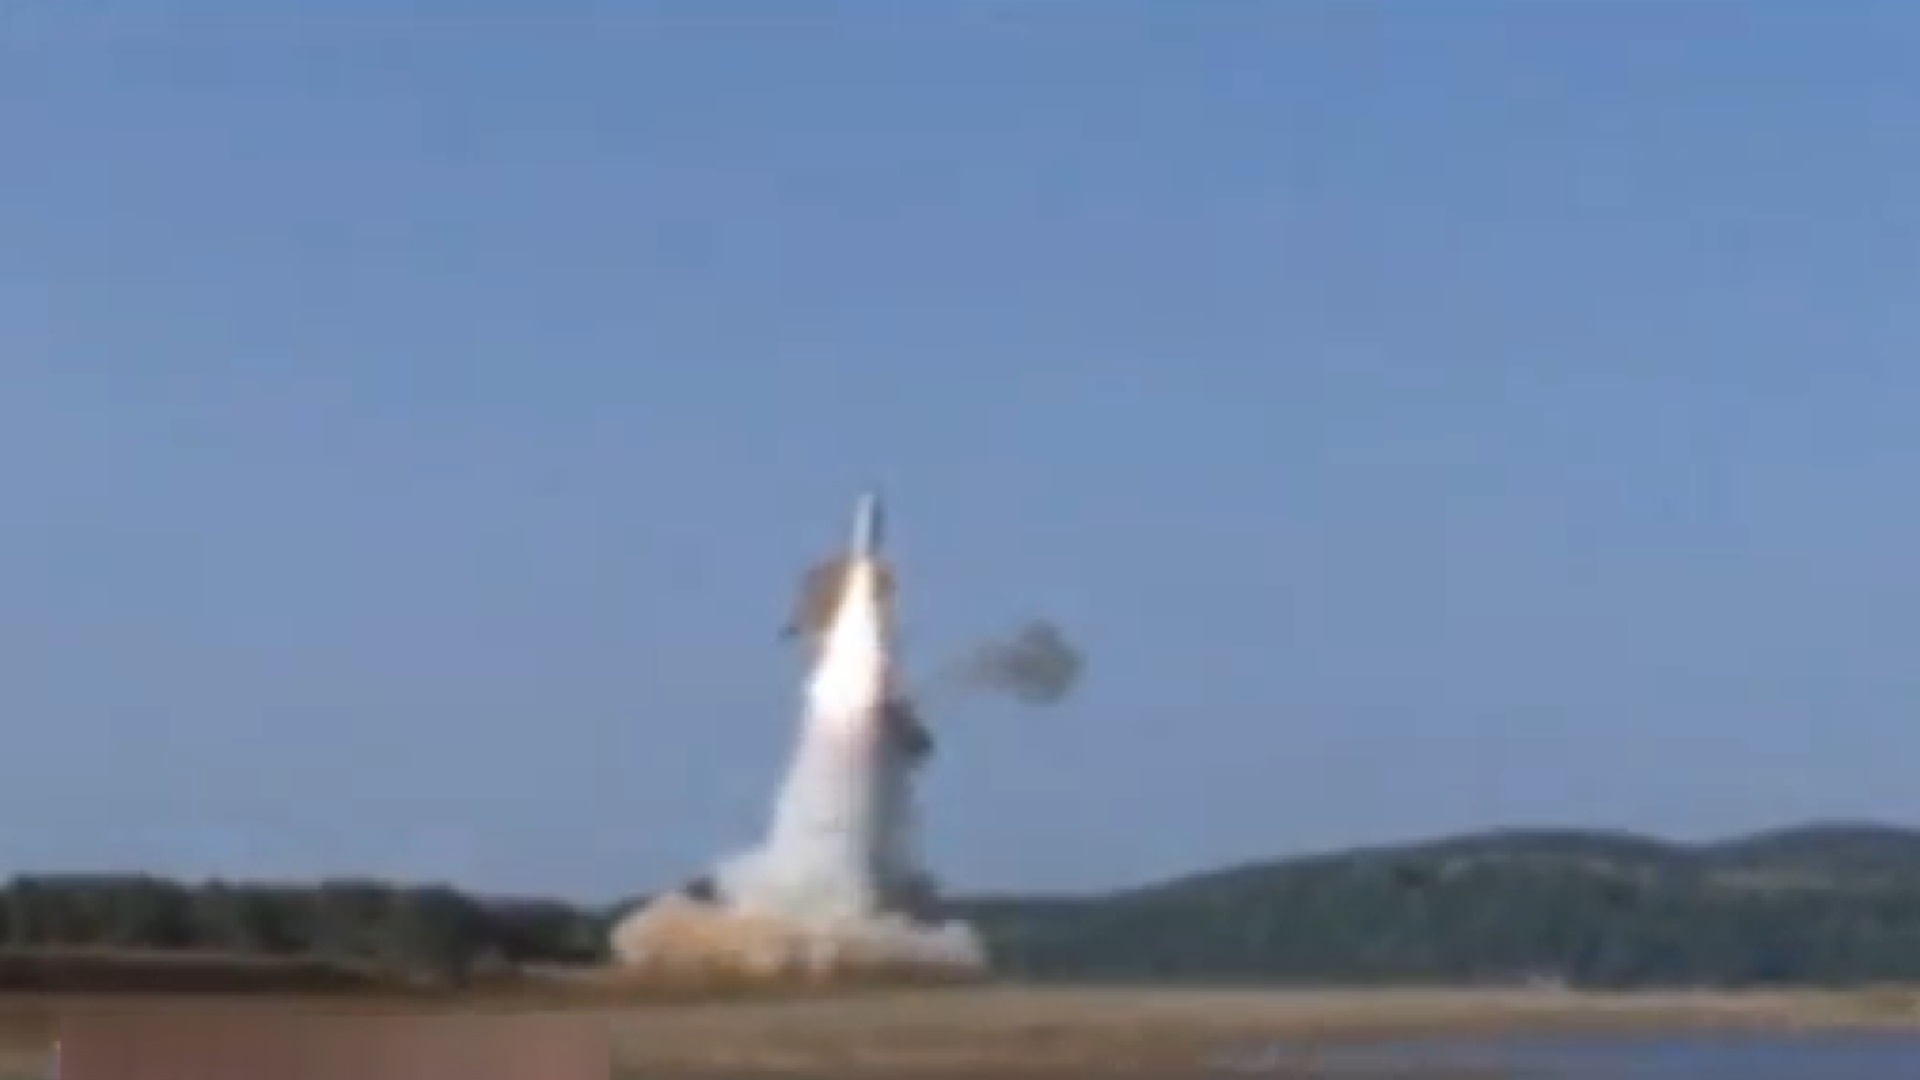 فیلم | ویدئوی منتشر شده از آزمایش موشک بالستیک در کره شمالی